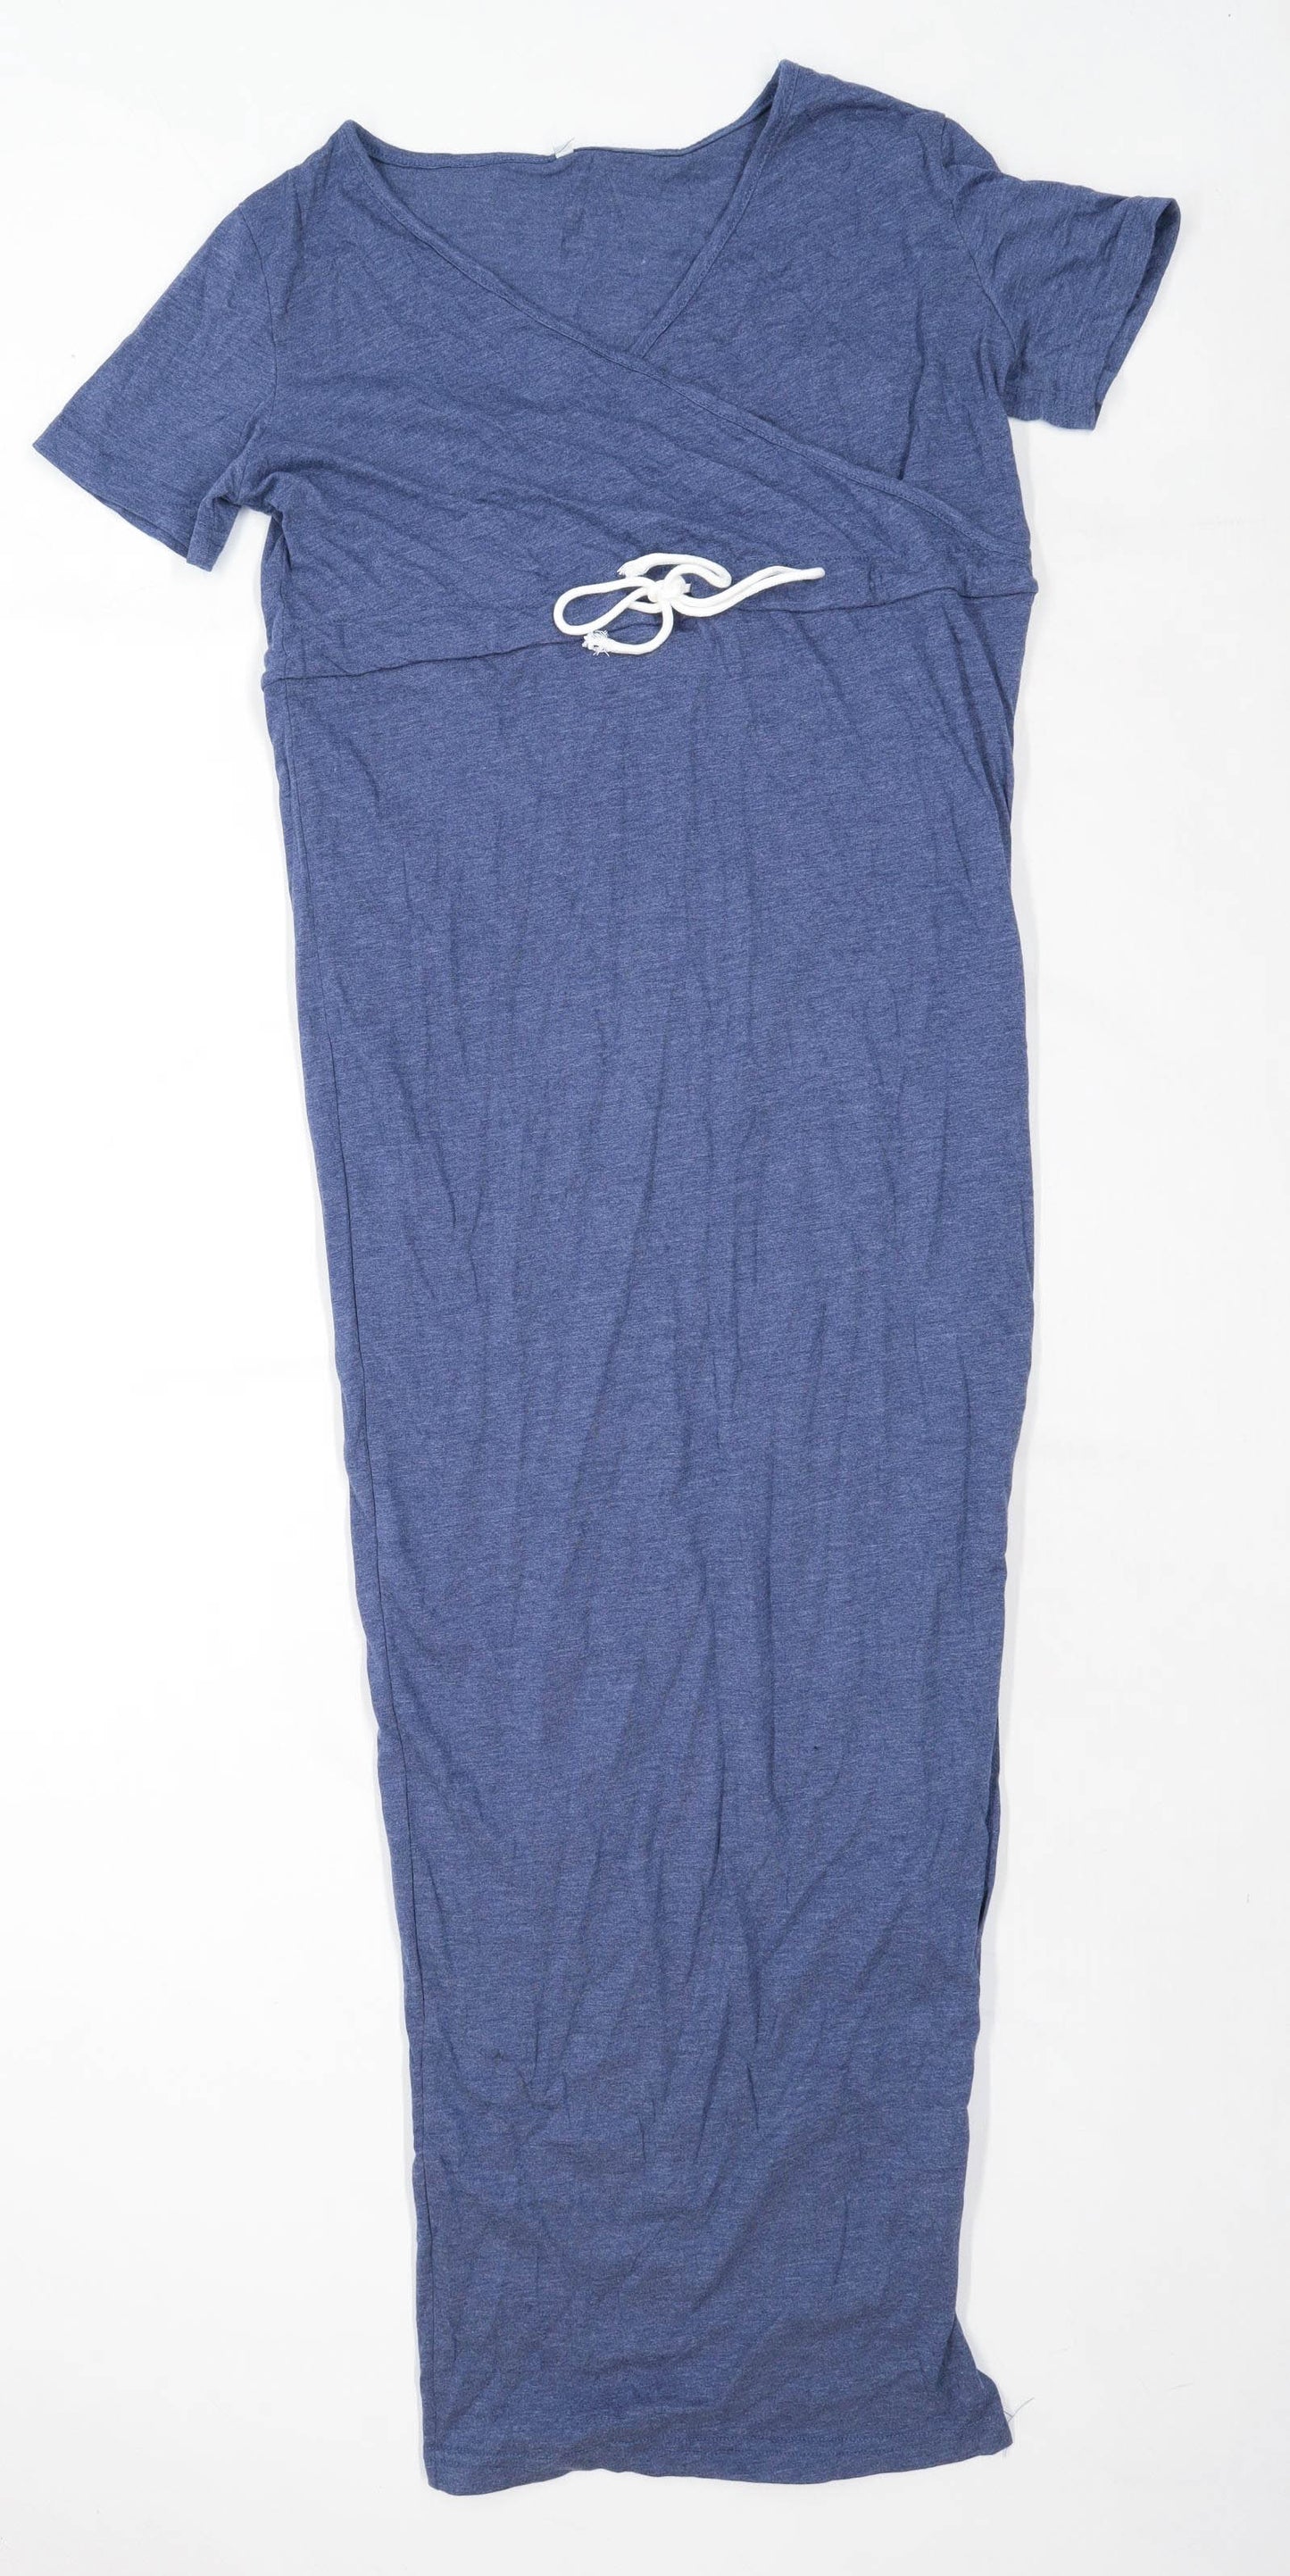 Preworn Womens Size M Cotton Blend Blue Maxi Dress (Regular)